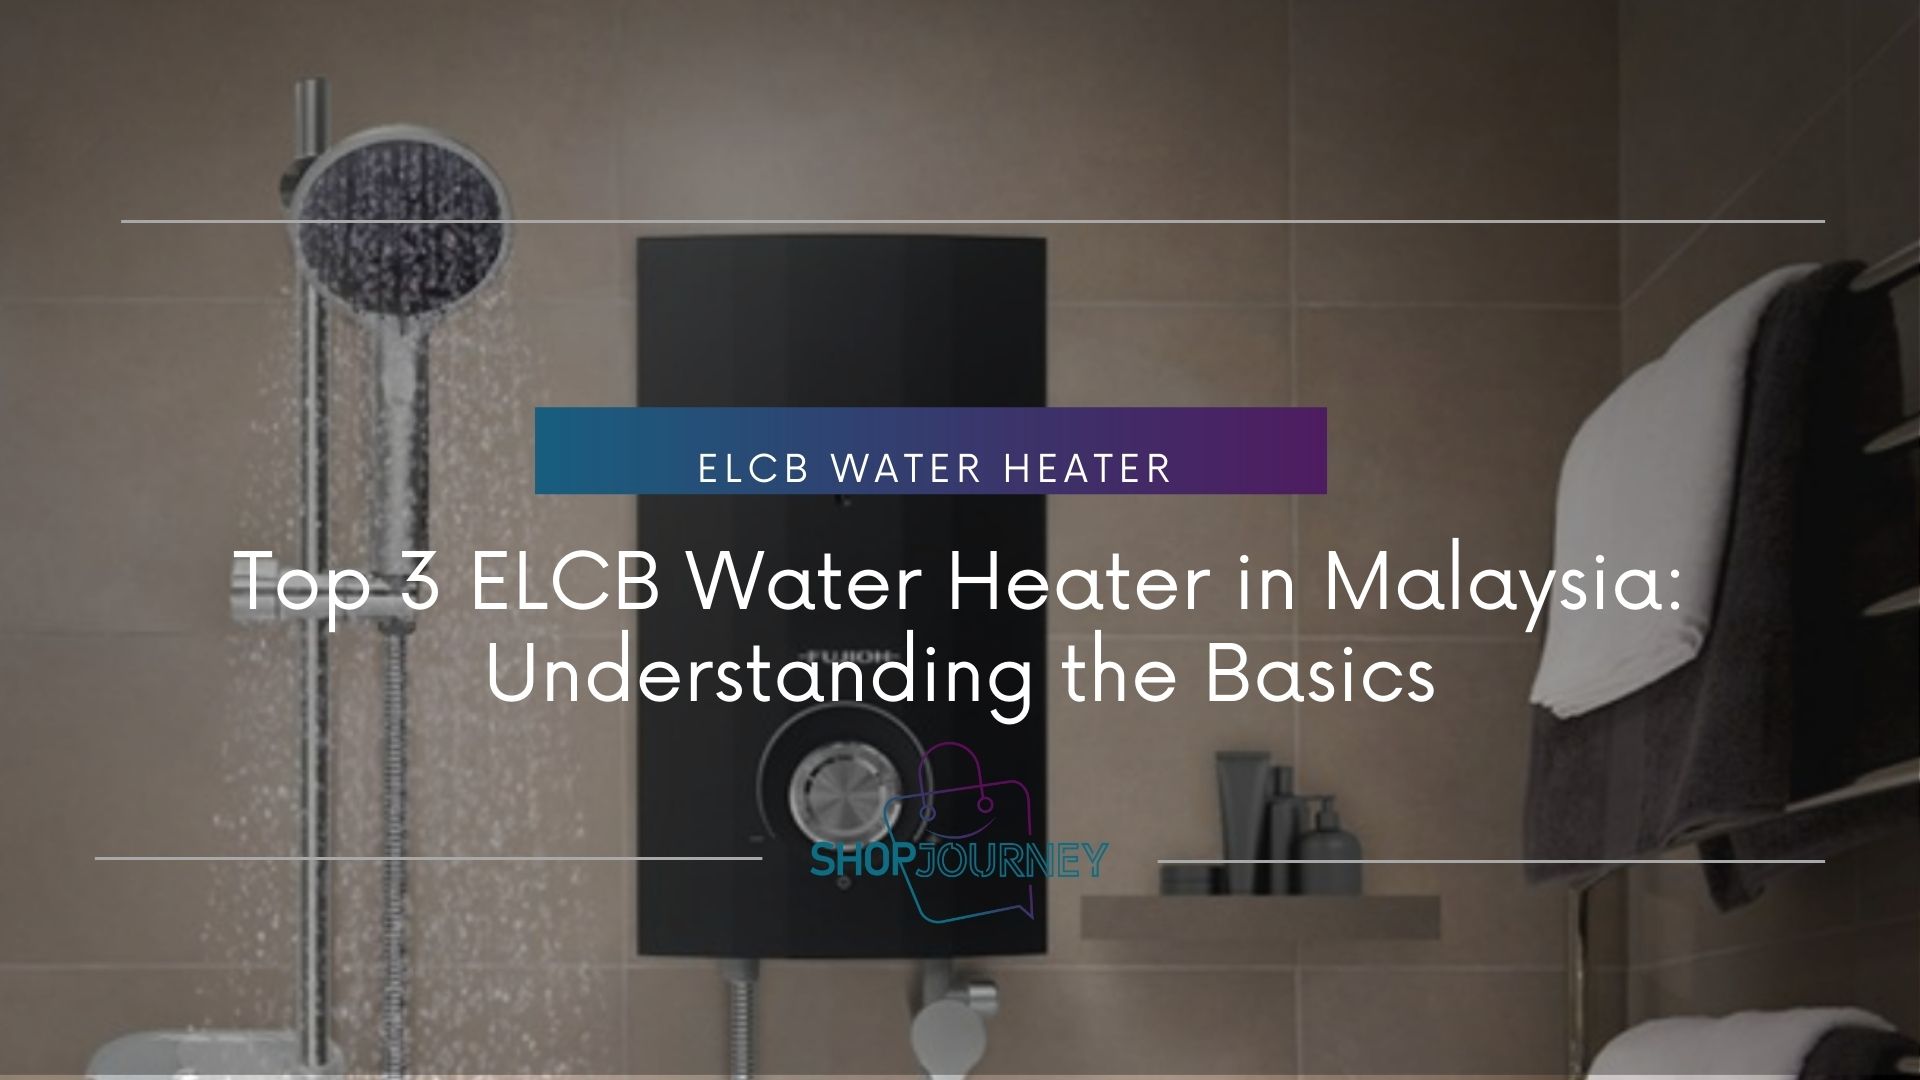 ELCB water heater - shop journey